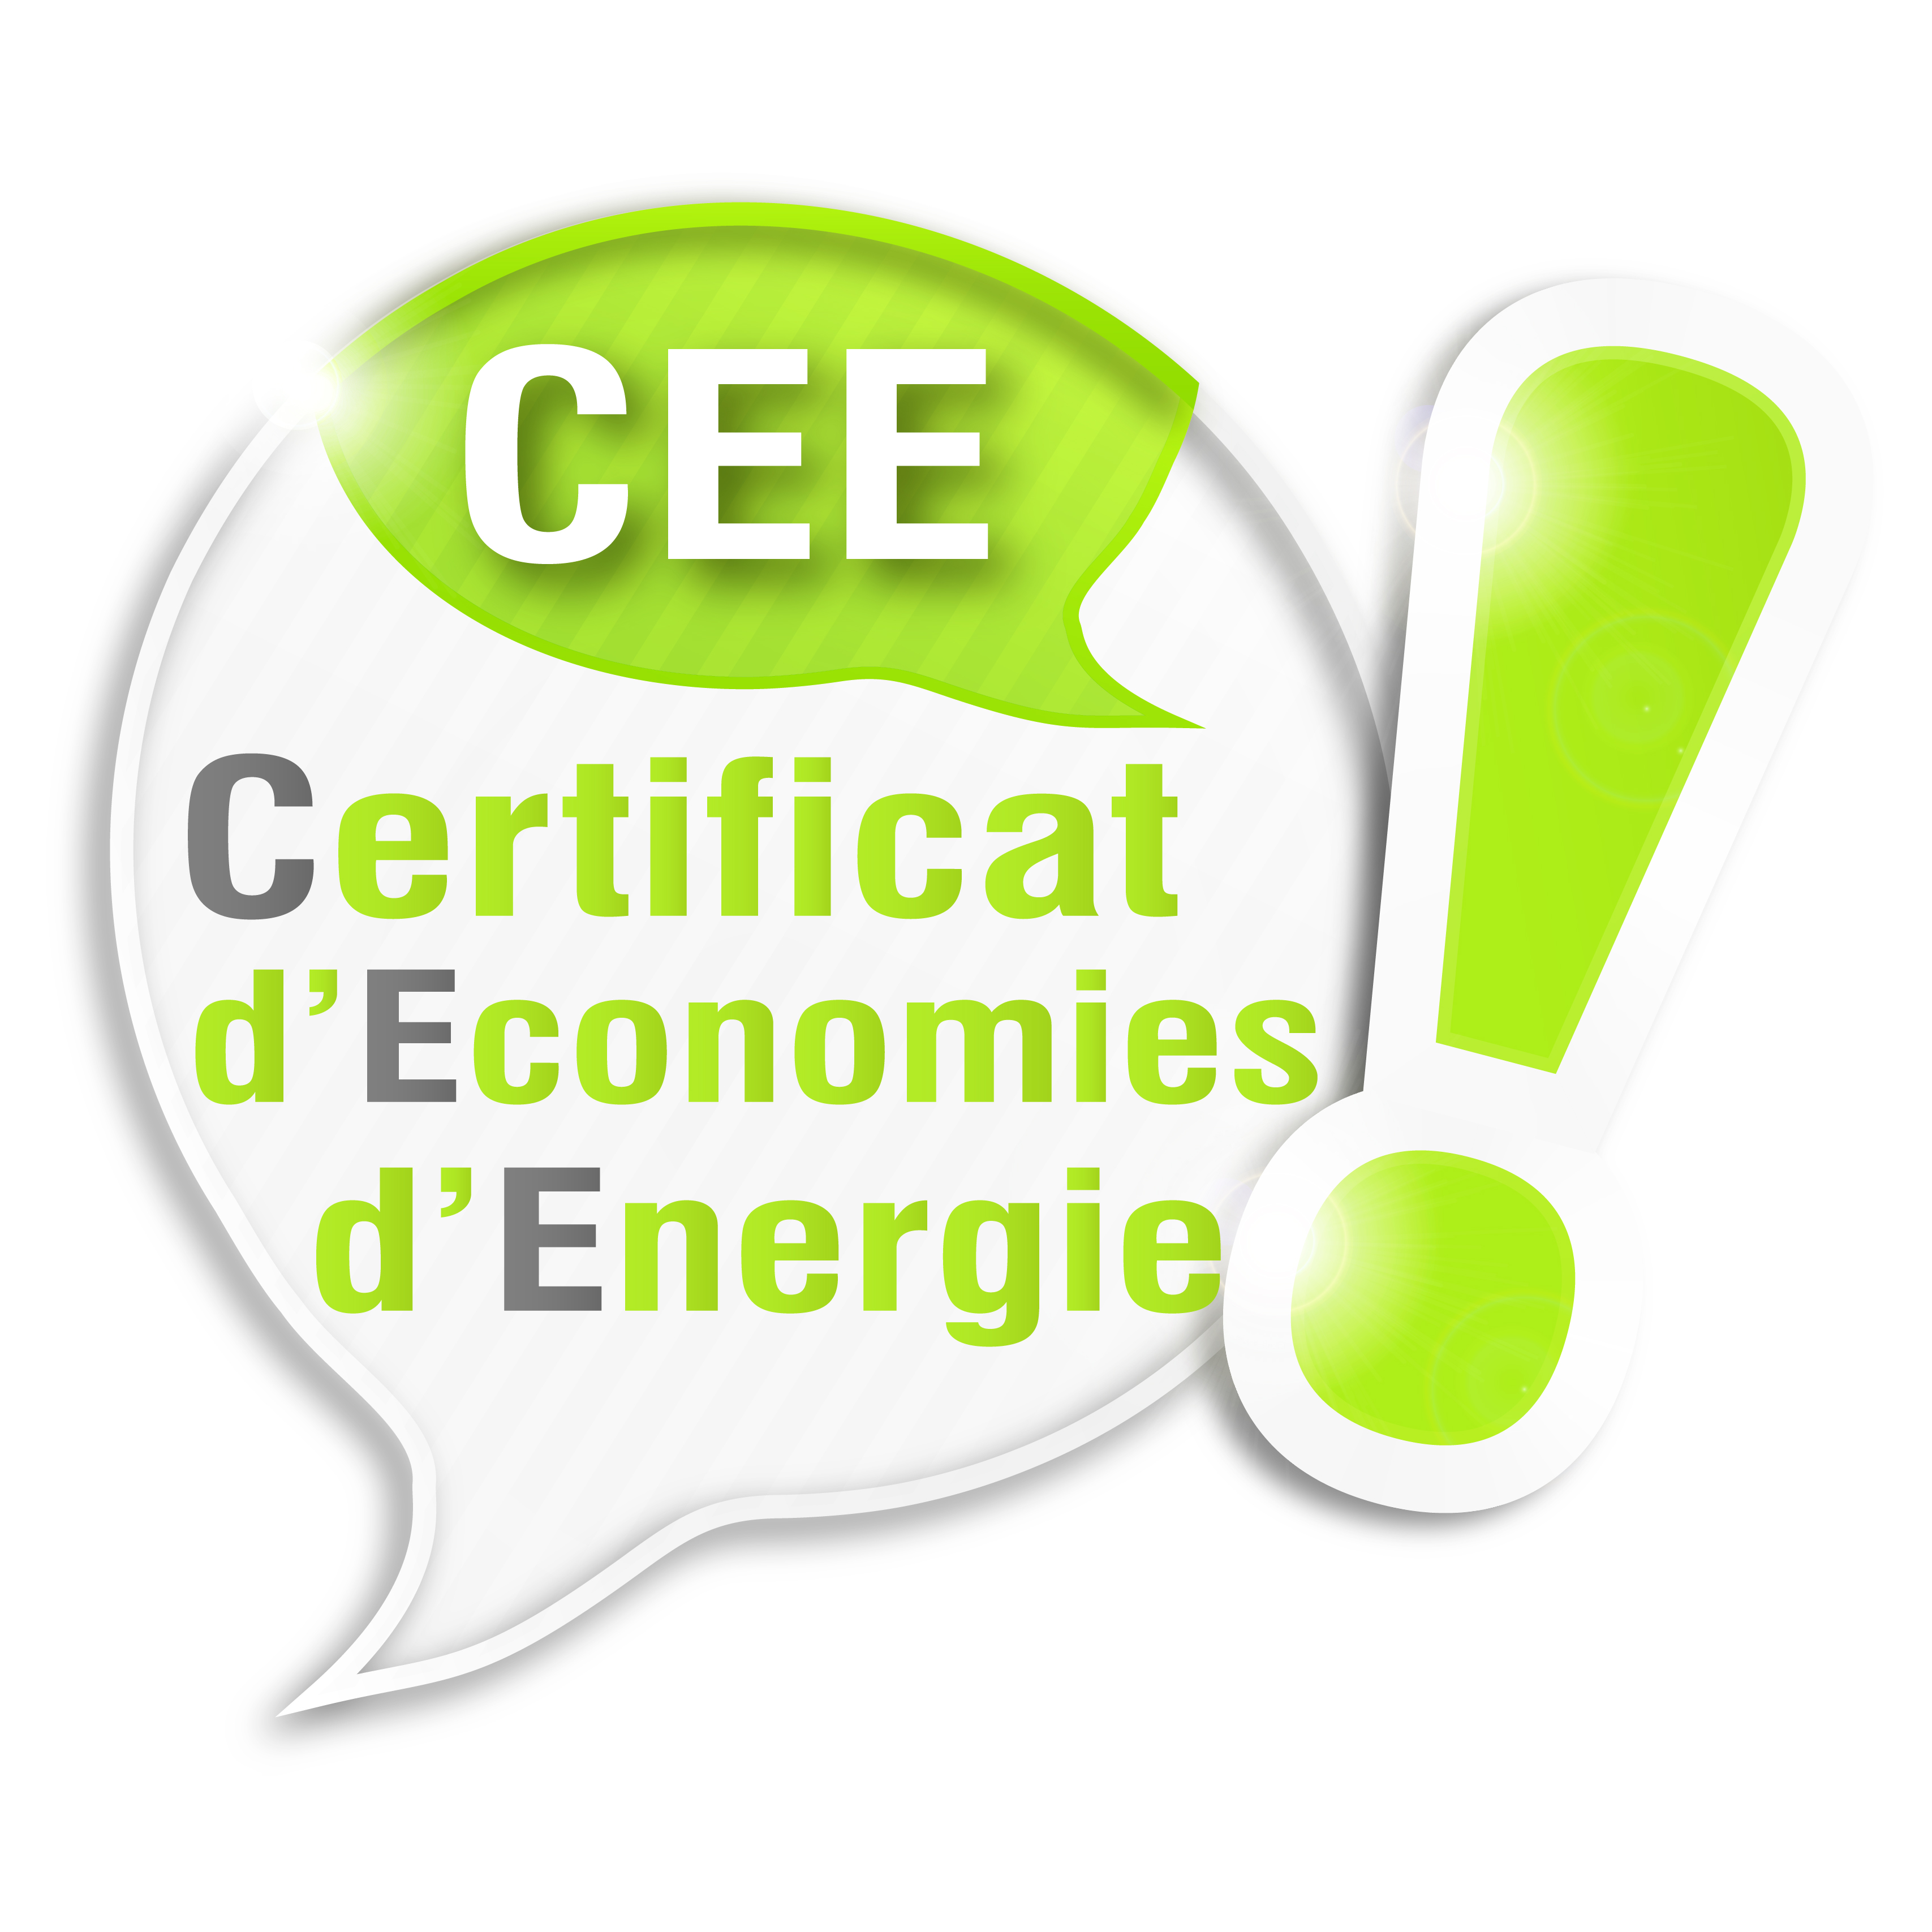 CEE (Certificats d’Economies d’Energie) : Des aides précieuses pour vos clients